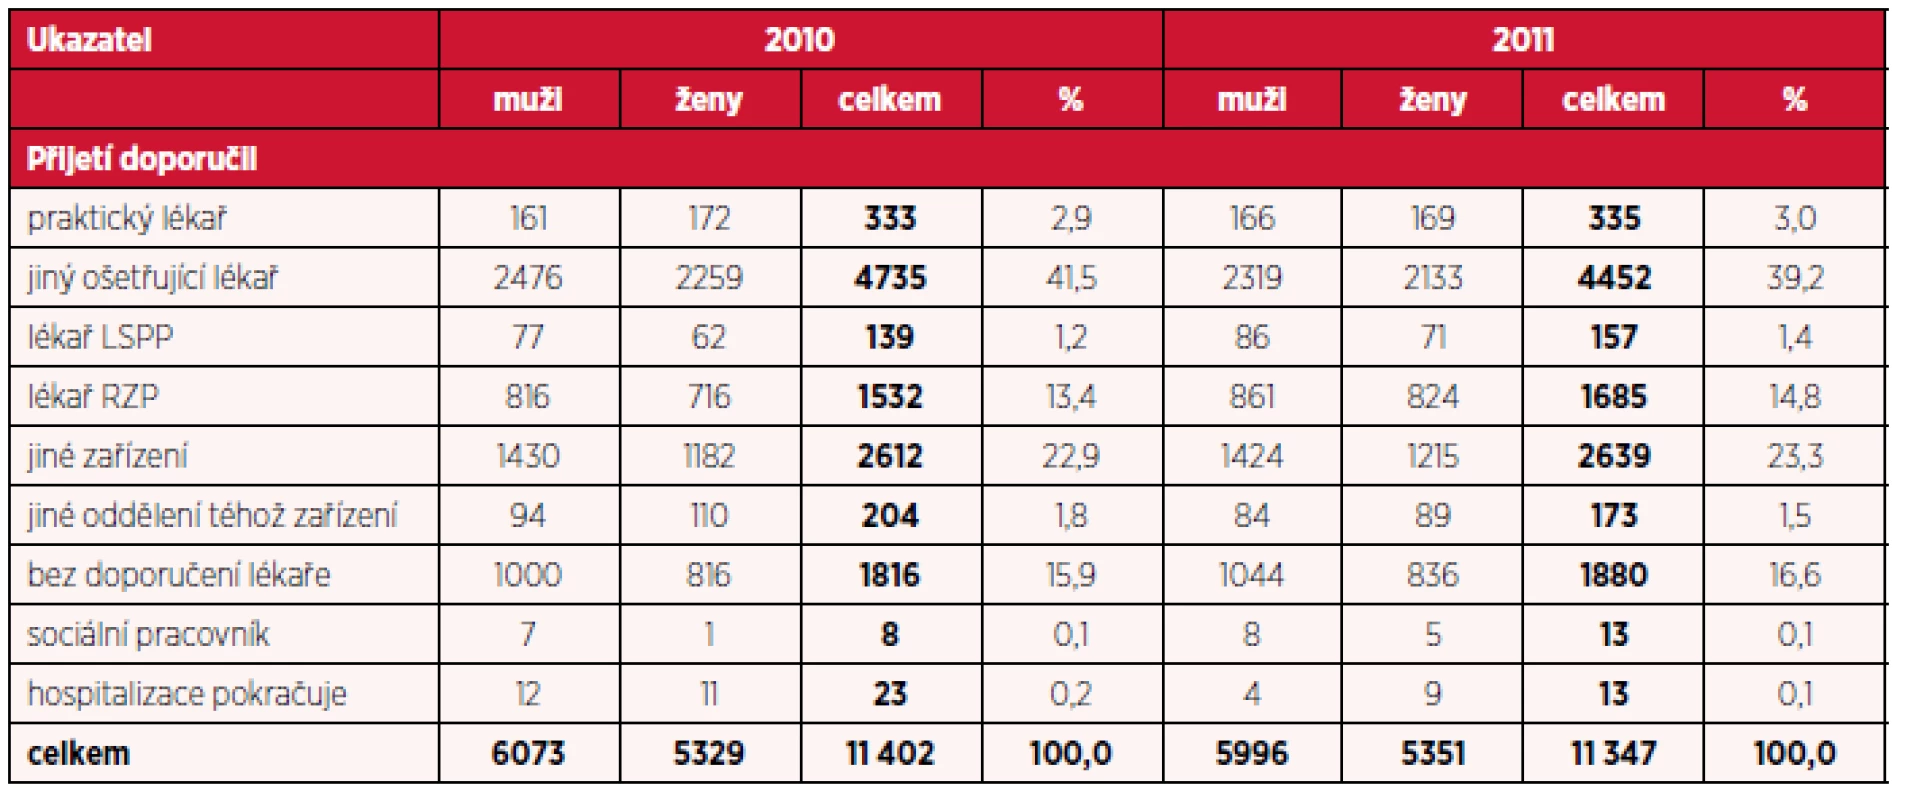 Počet hospitalizací pro diagnózy F20-F29 podle doporučení k přijetí a pohlaví v letech 2010 a 2011